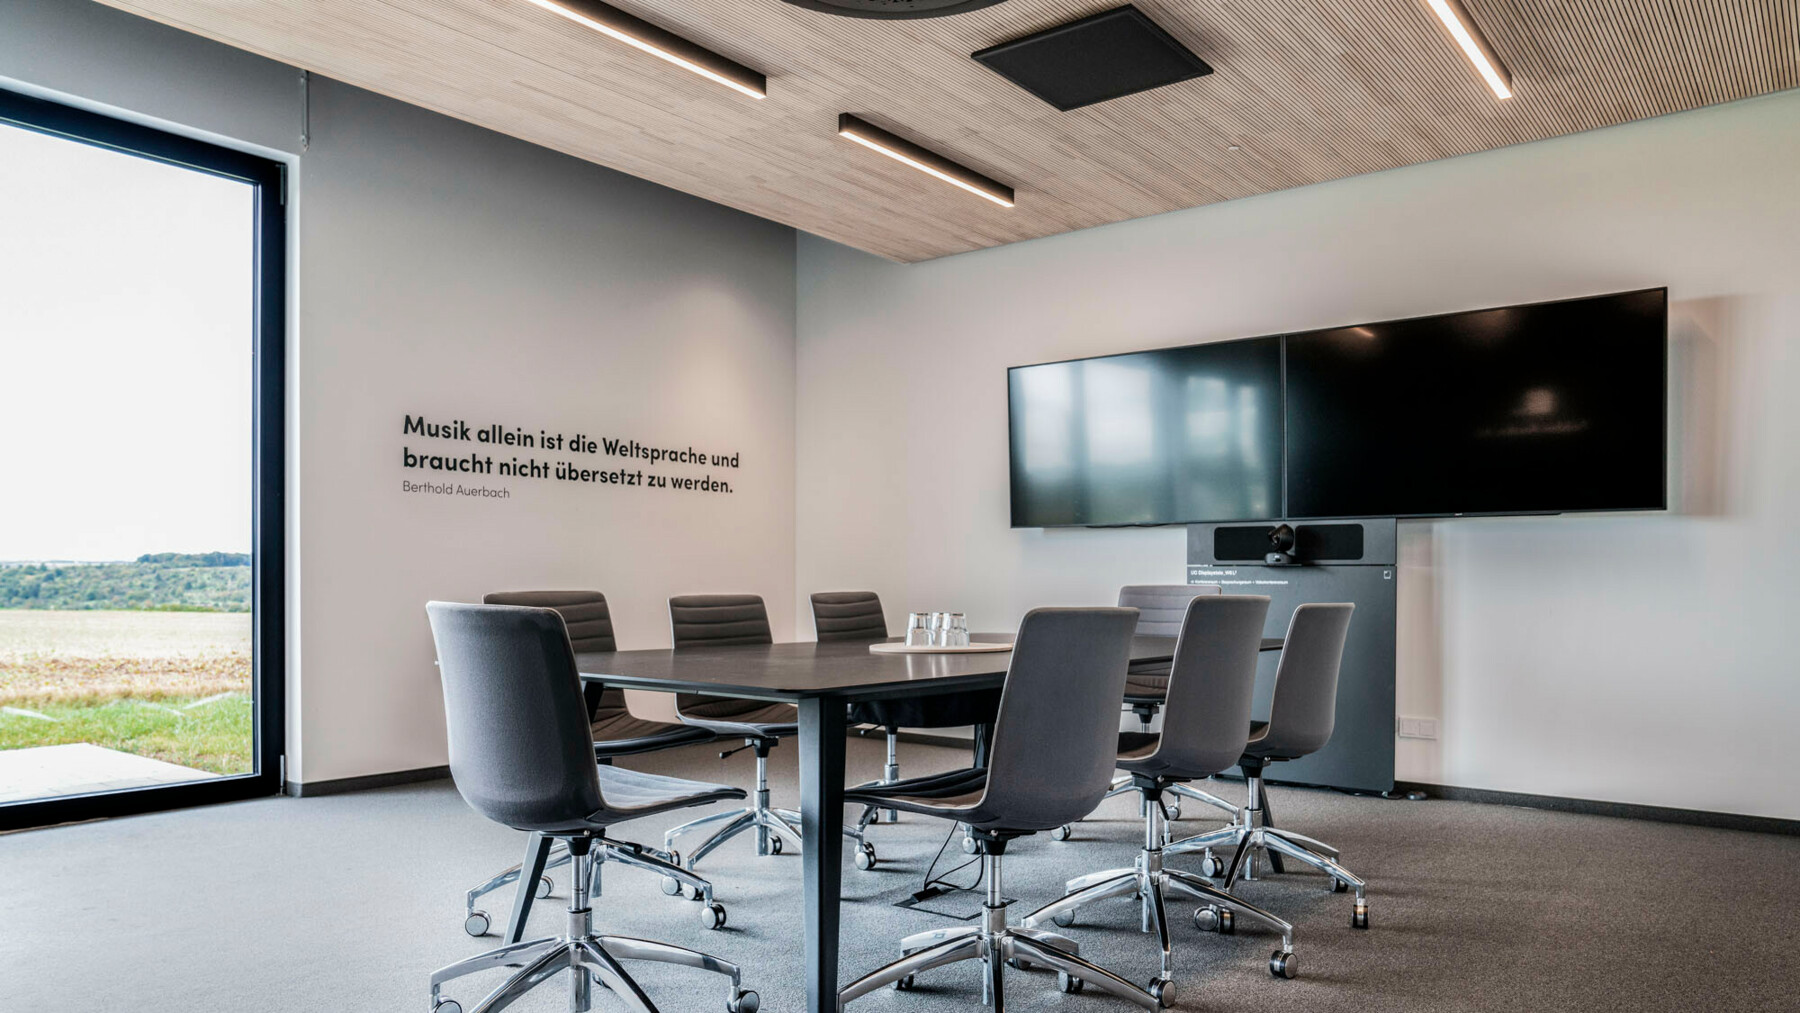 Der Sitzungsraum lässt durch seine minimalistische Einrichtung viel Raum für konstruktive Diskussionen und Gespräche. 